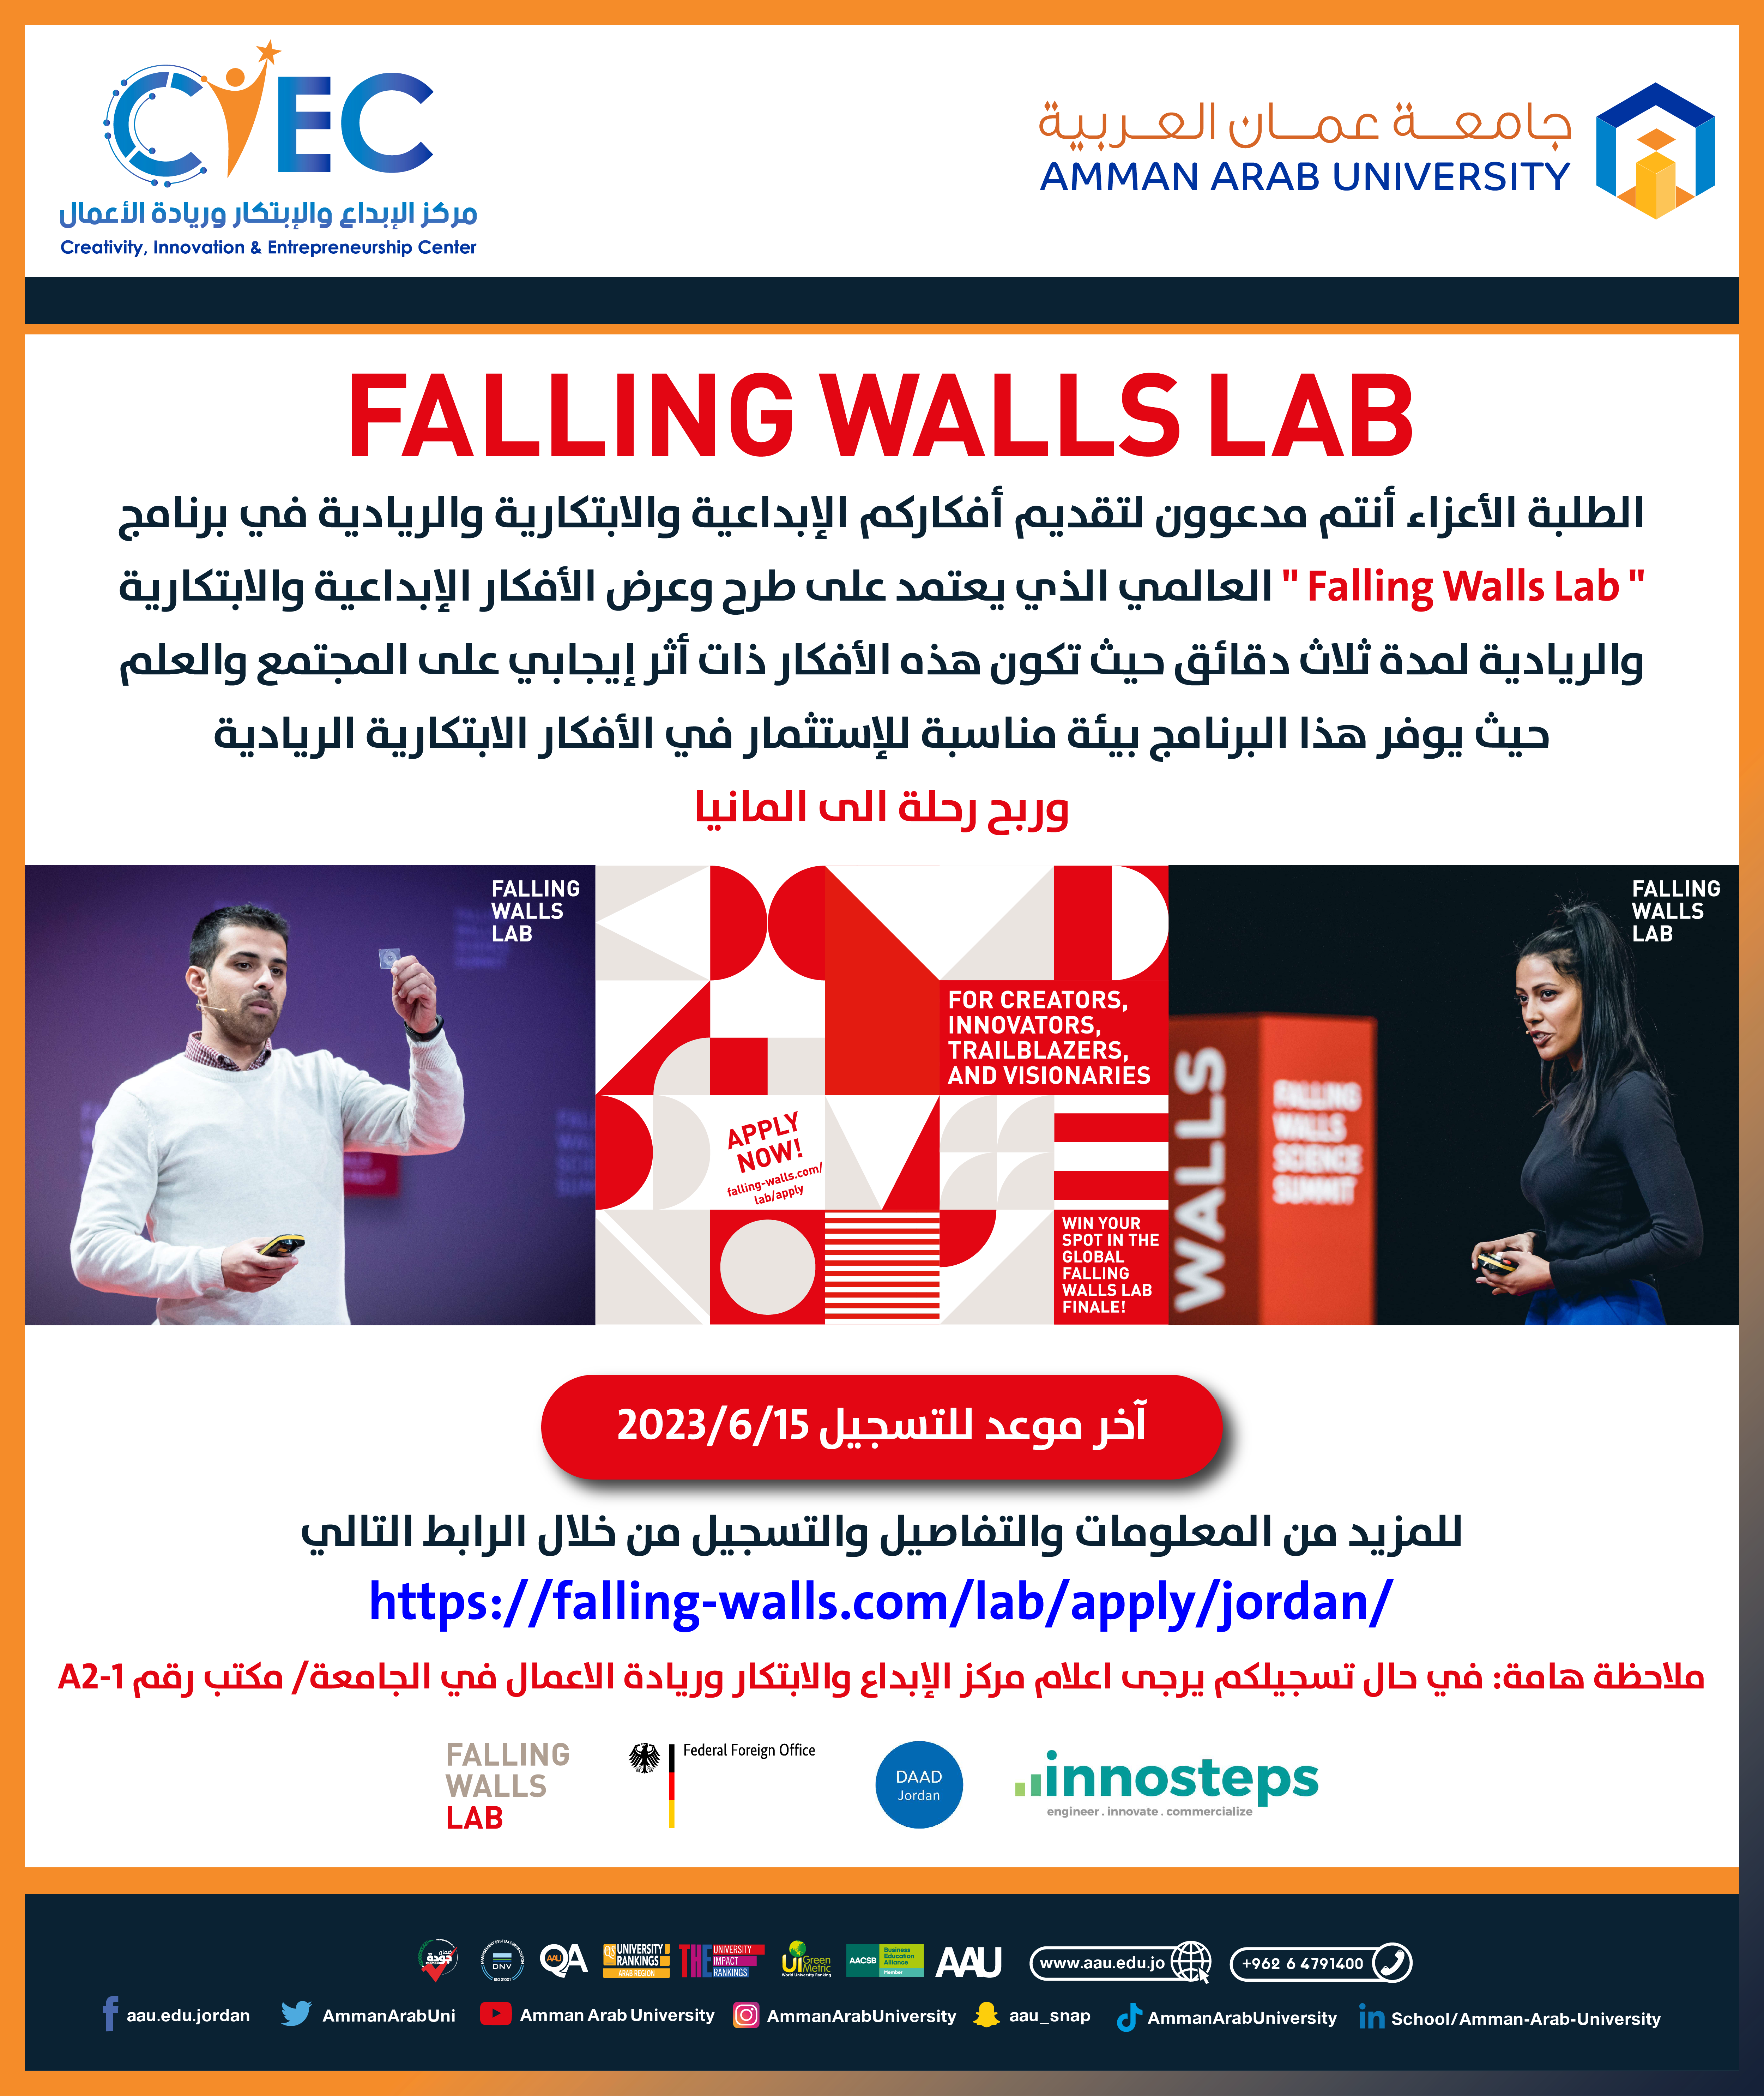 طرح وعرض الافكار الابداعية والابتكارية ضمن برنامج Falling Walls Lab